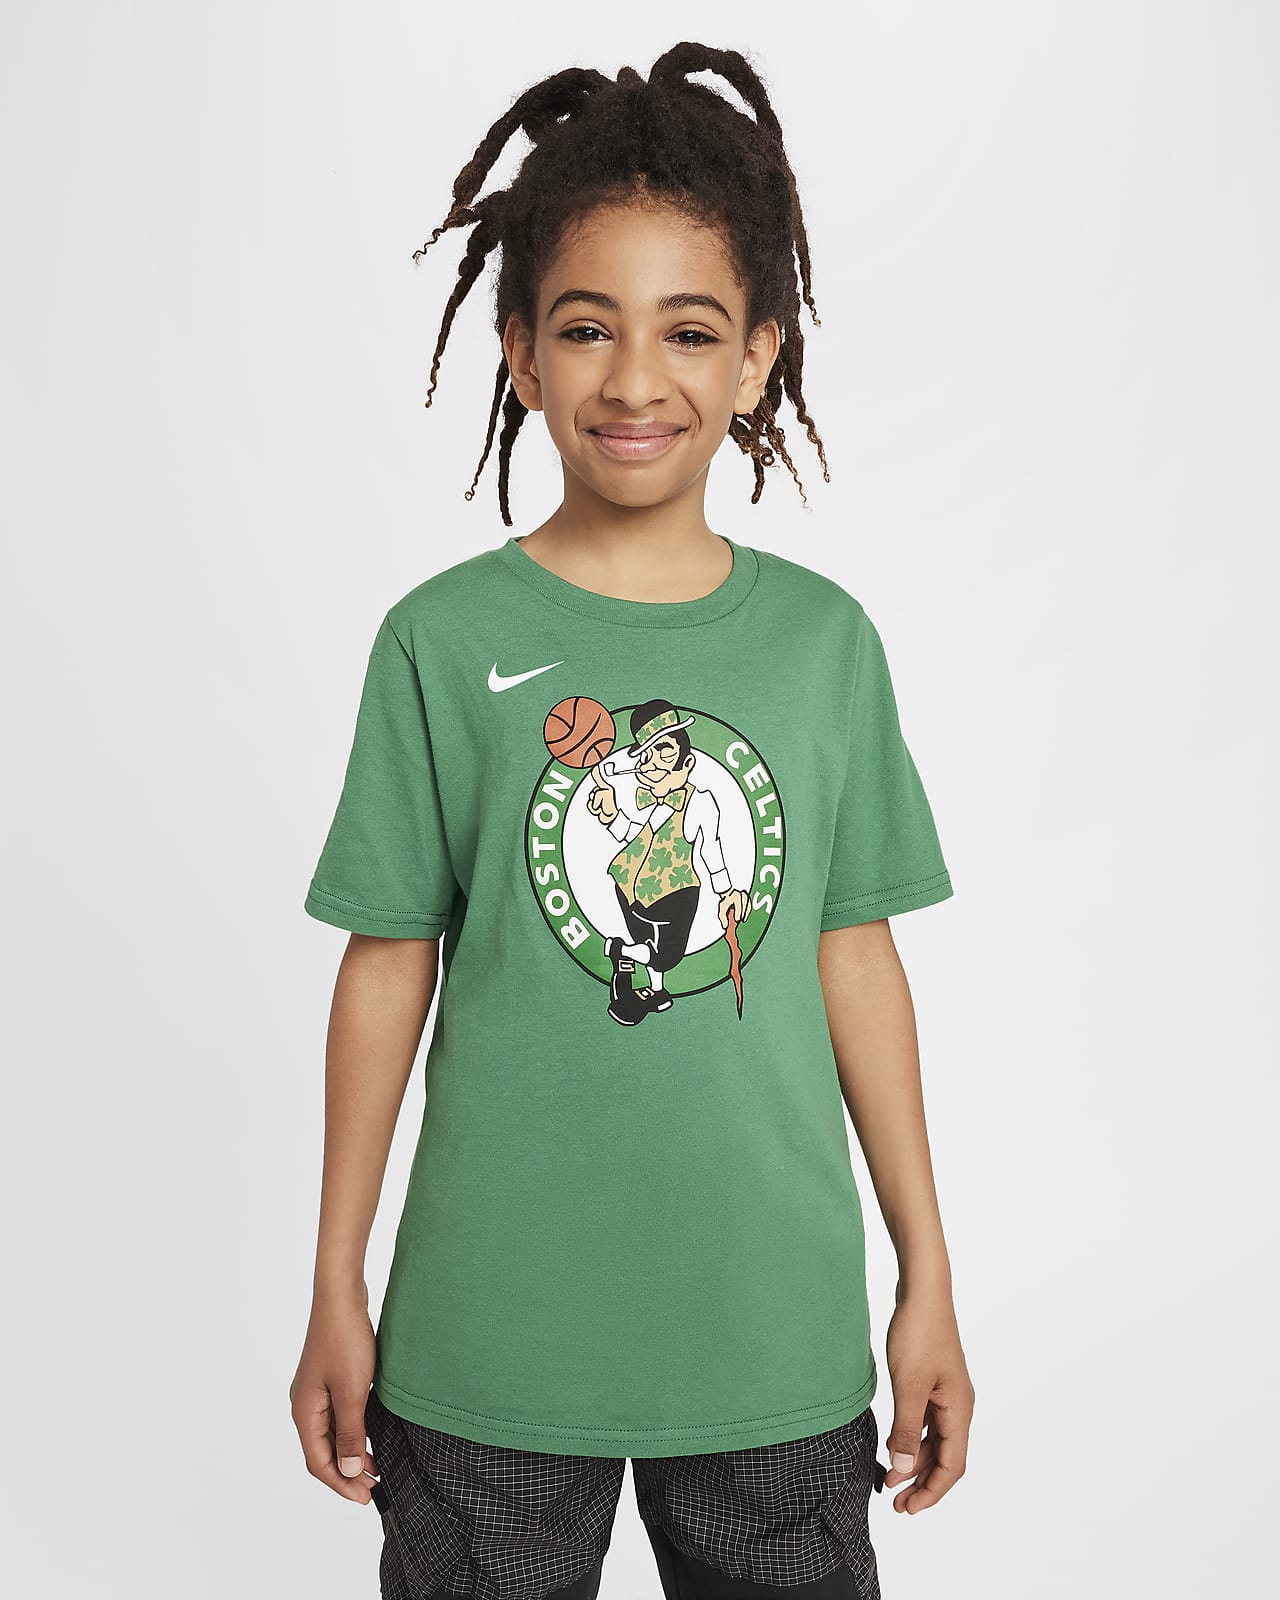 Boston Celtics Essential Camiseta con logotipo Nike de la NBA - Niño